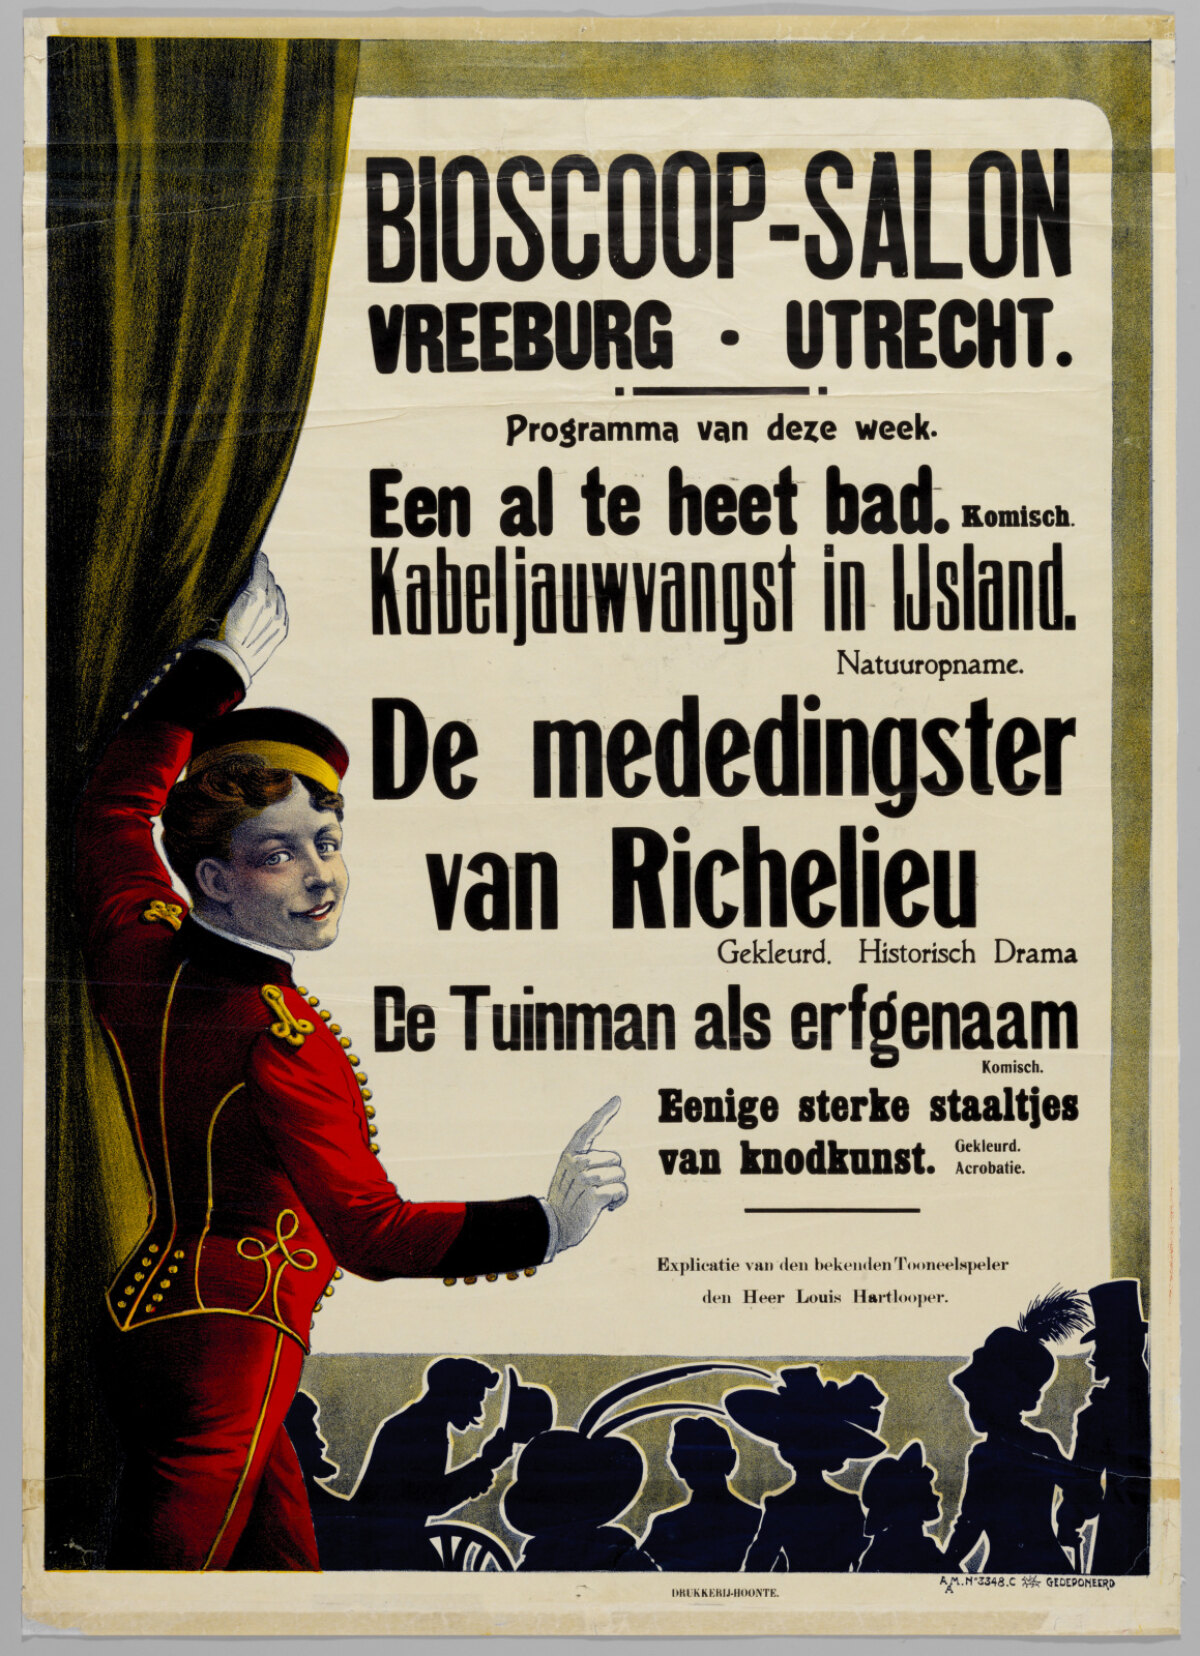 Drie affiches van Bioscoop-Salon Vreeburg